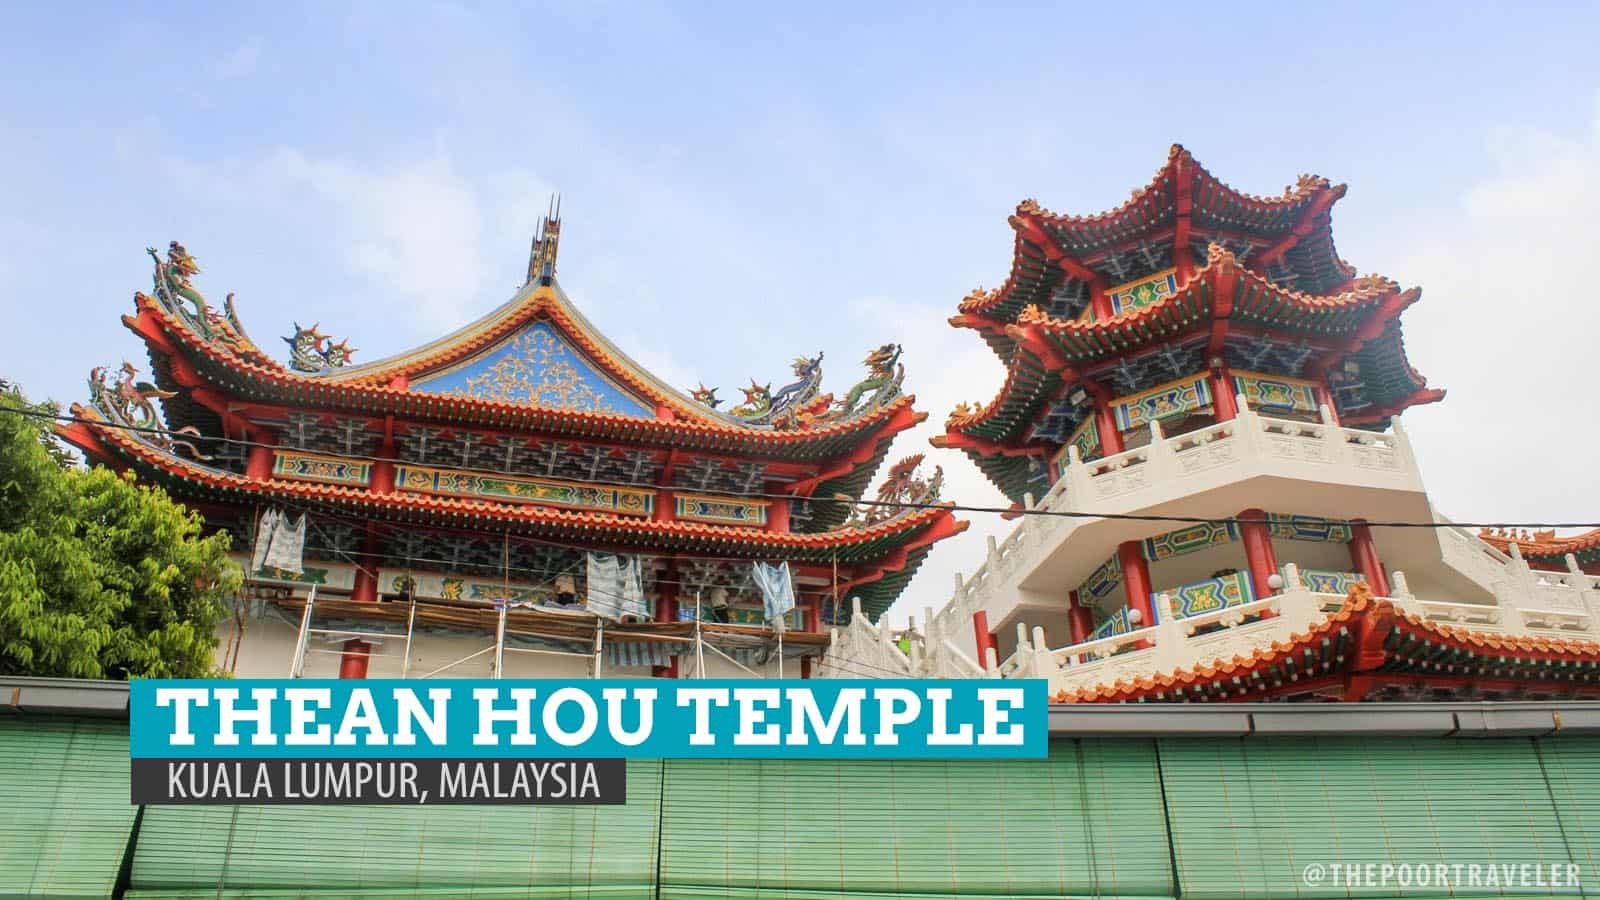 Thean Hou Temple in Kuala Lumpur, Malaysia | The Poor Traveler